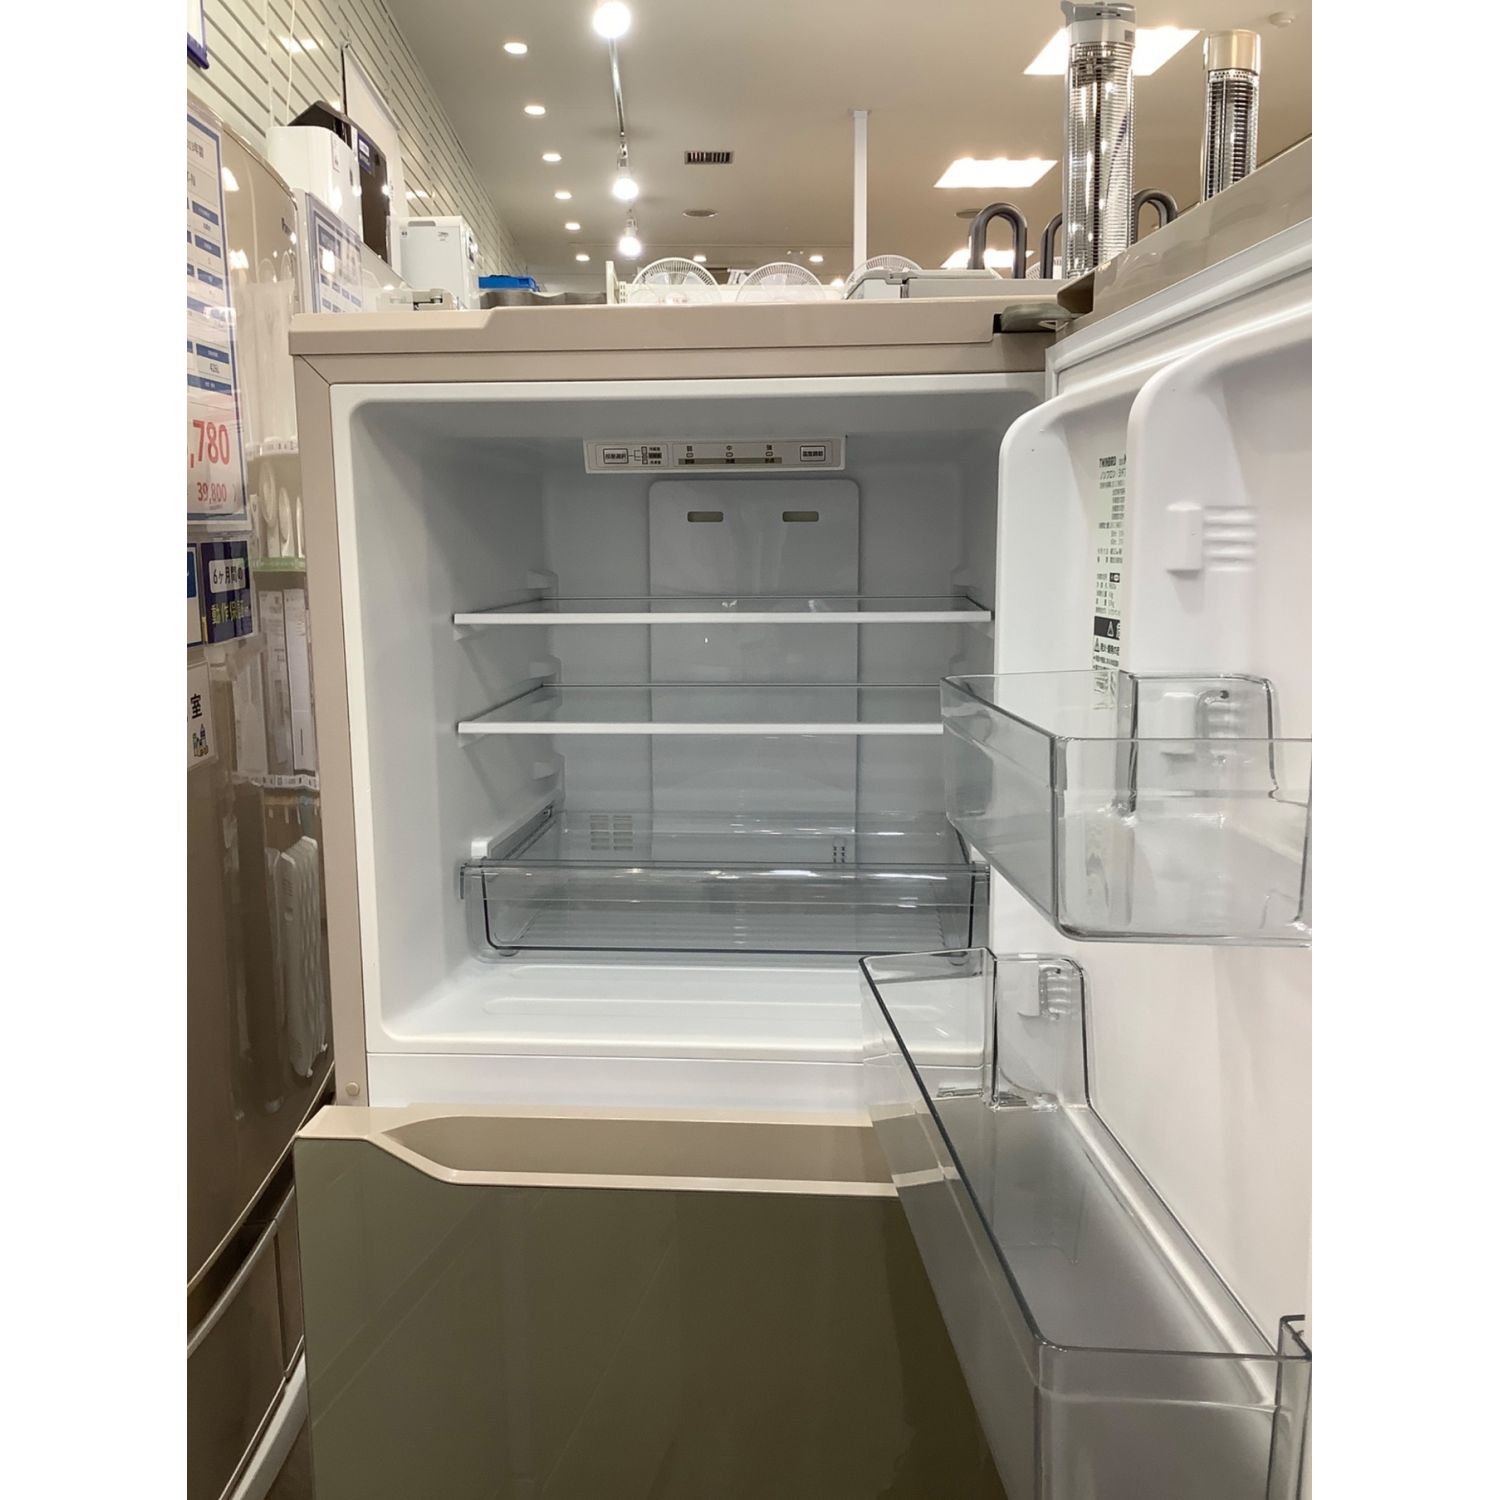 2021年製 ツインバード 3ドア冷凍冷蔵庫 KHR-EJ19 199L - キッチン家電